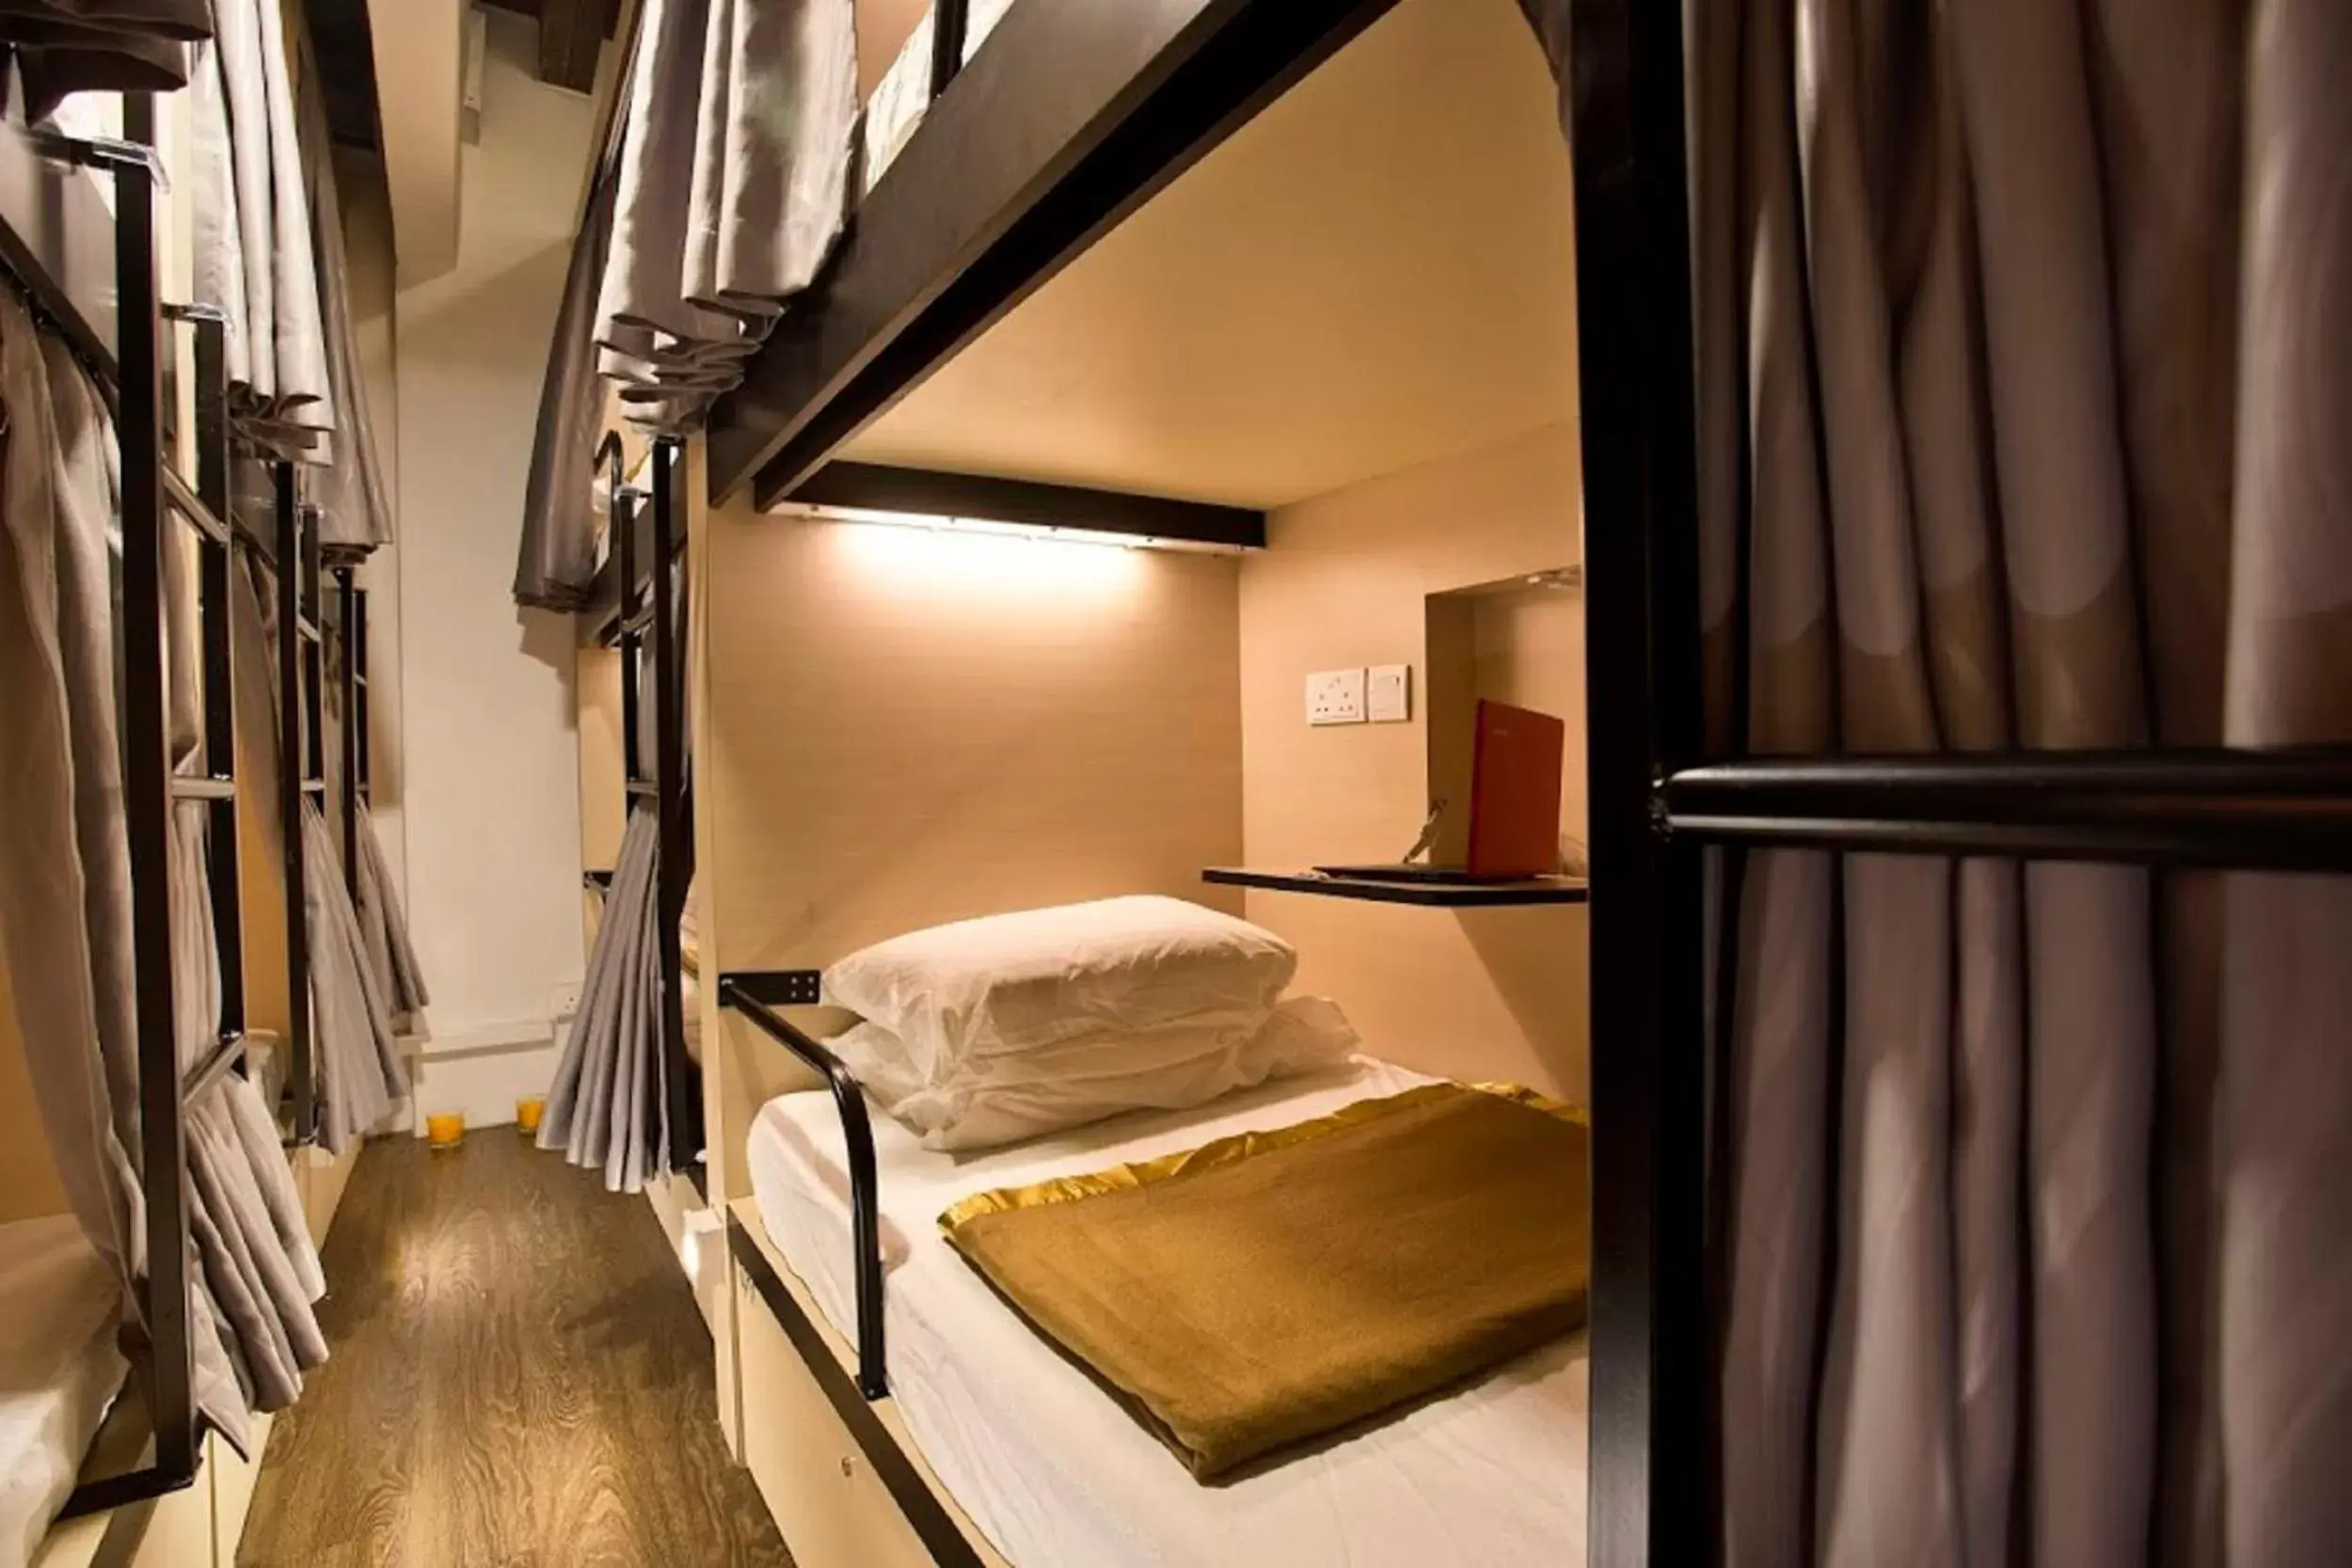 bunk bed, Room Photo in 7 Wonders Hostel